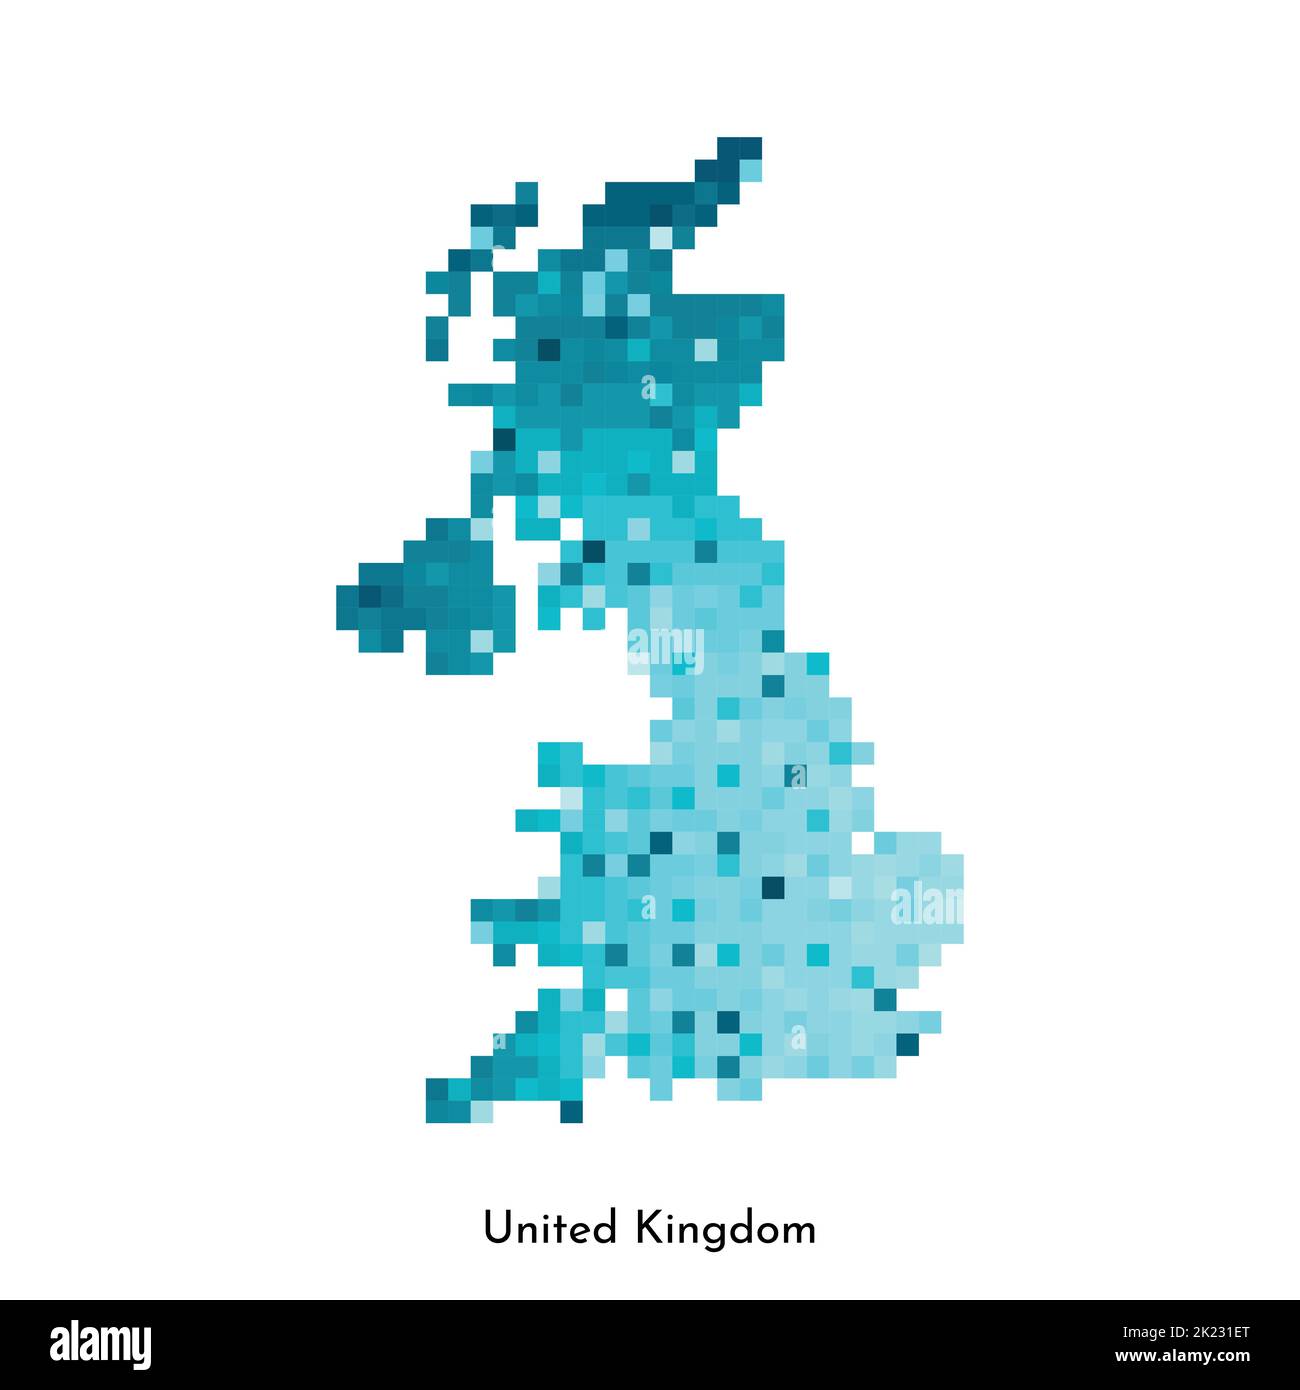 Illustrazione geometrica isolata da vettore con semplice forma blu ghiaccio della mappa del Regno Unito di Gran Bretagna e Irlanda del Nord. Stile pixel art per NFT Illustrazione Vettoriale